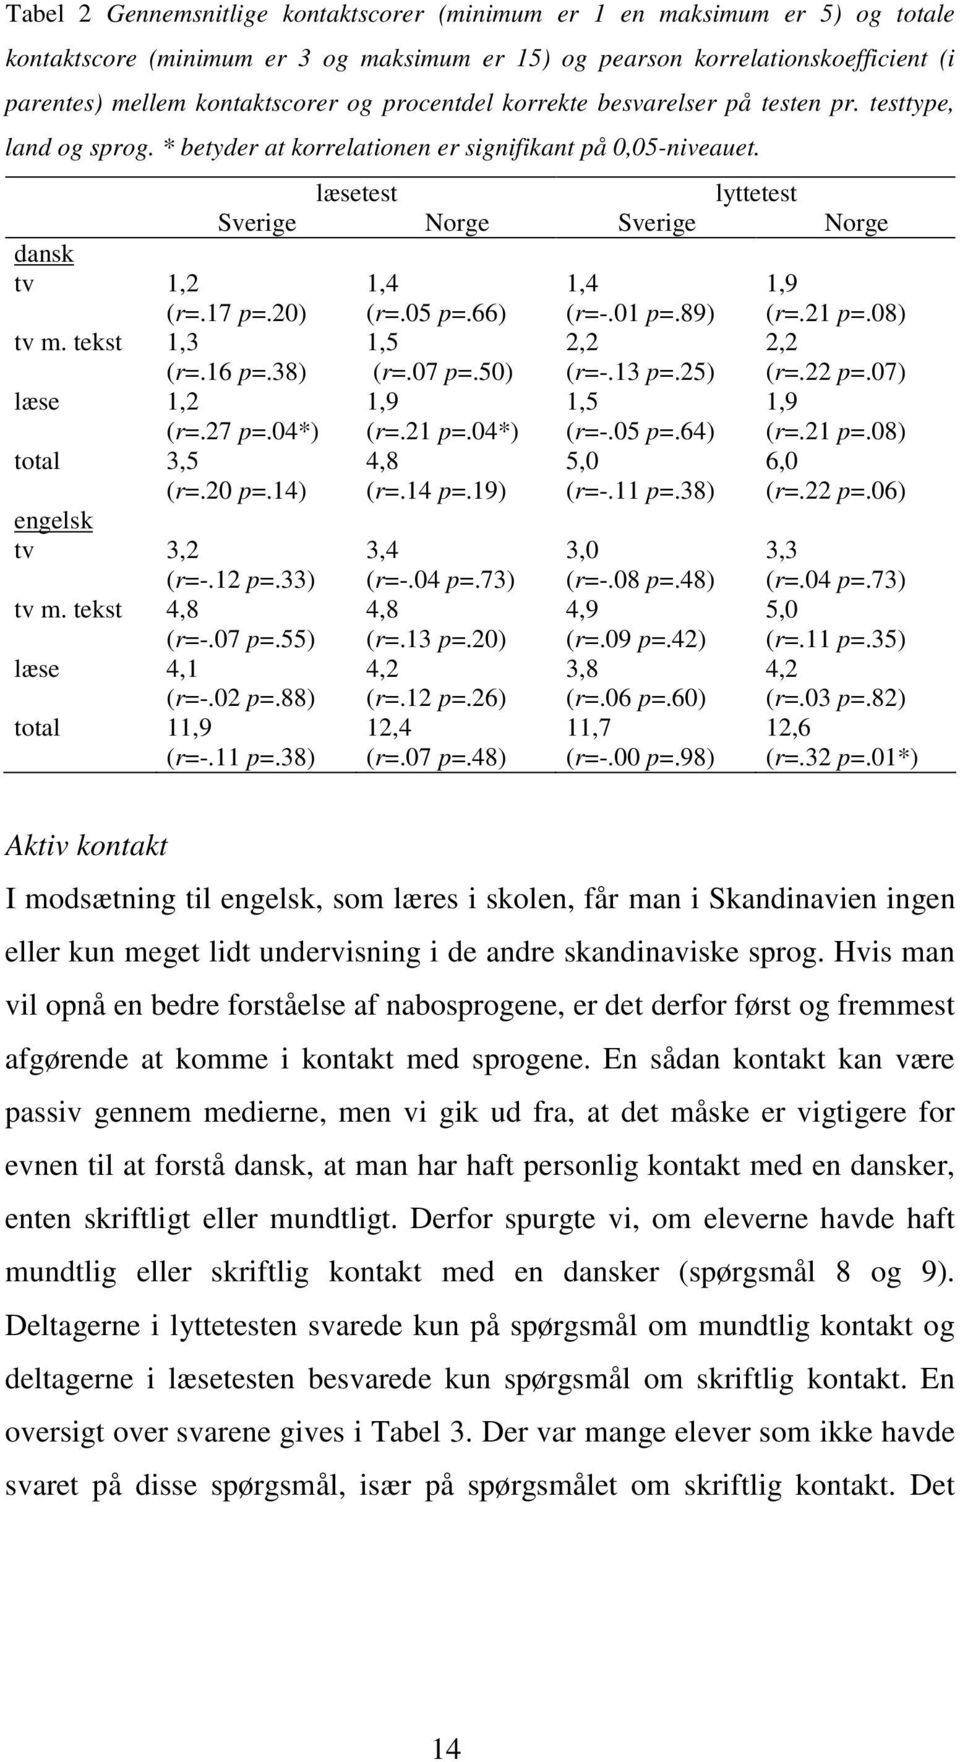 tekst læse total læsetest lyttetest Sverige Norge Sverige Norge 1,2 (r=.17 p=.20) 1,3 (r=.16 p=.38) 1,2 (r=.27 p=.04*) 3,5 (r=.20 p=.14) 3,2 (r=-.12 p=.33) 4,8 (r=-.07 p=.55) 4,1 (r=-.02 p=.